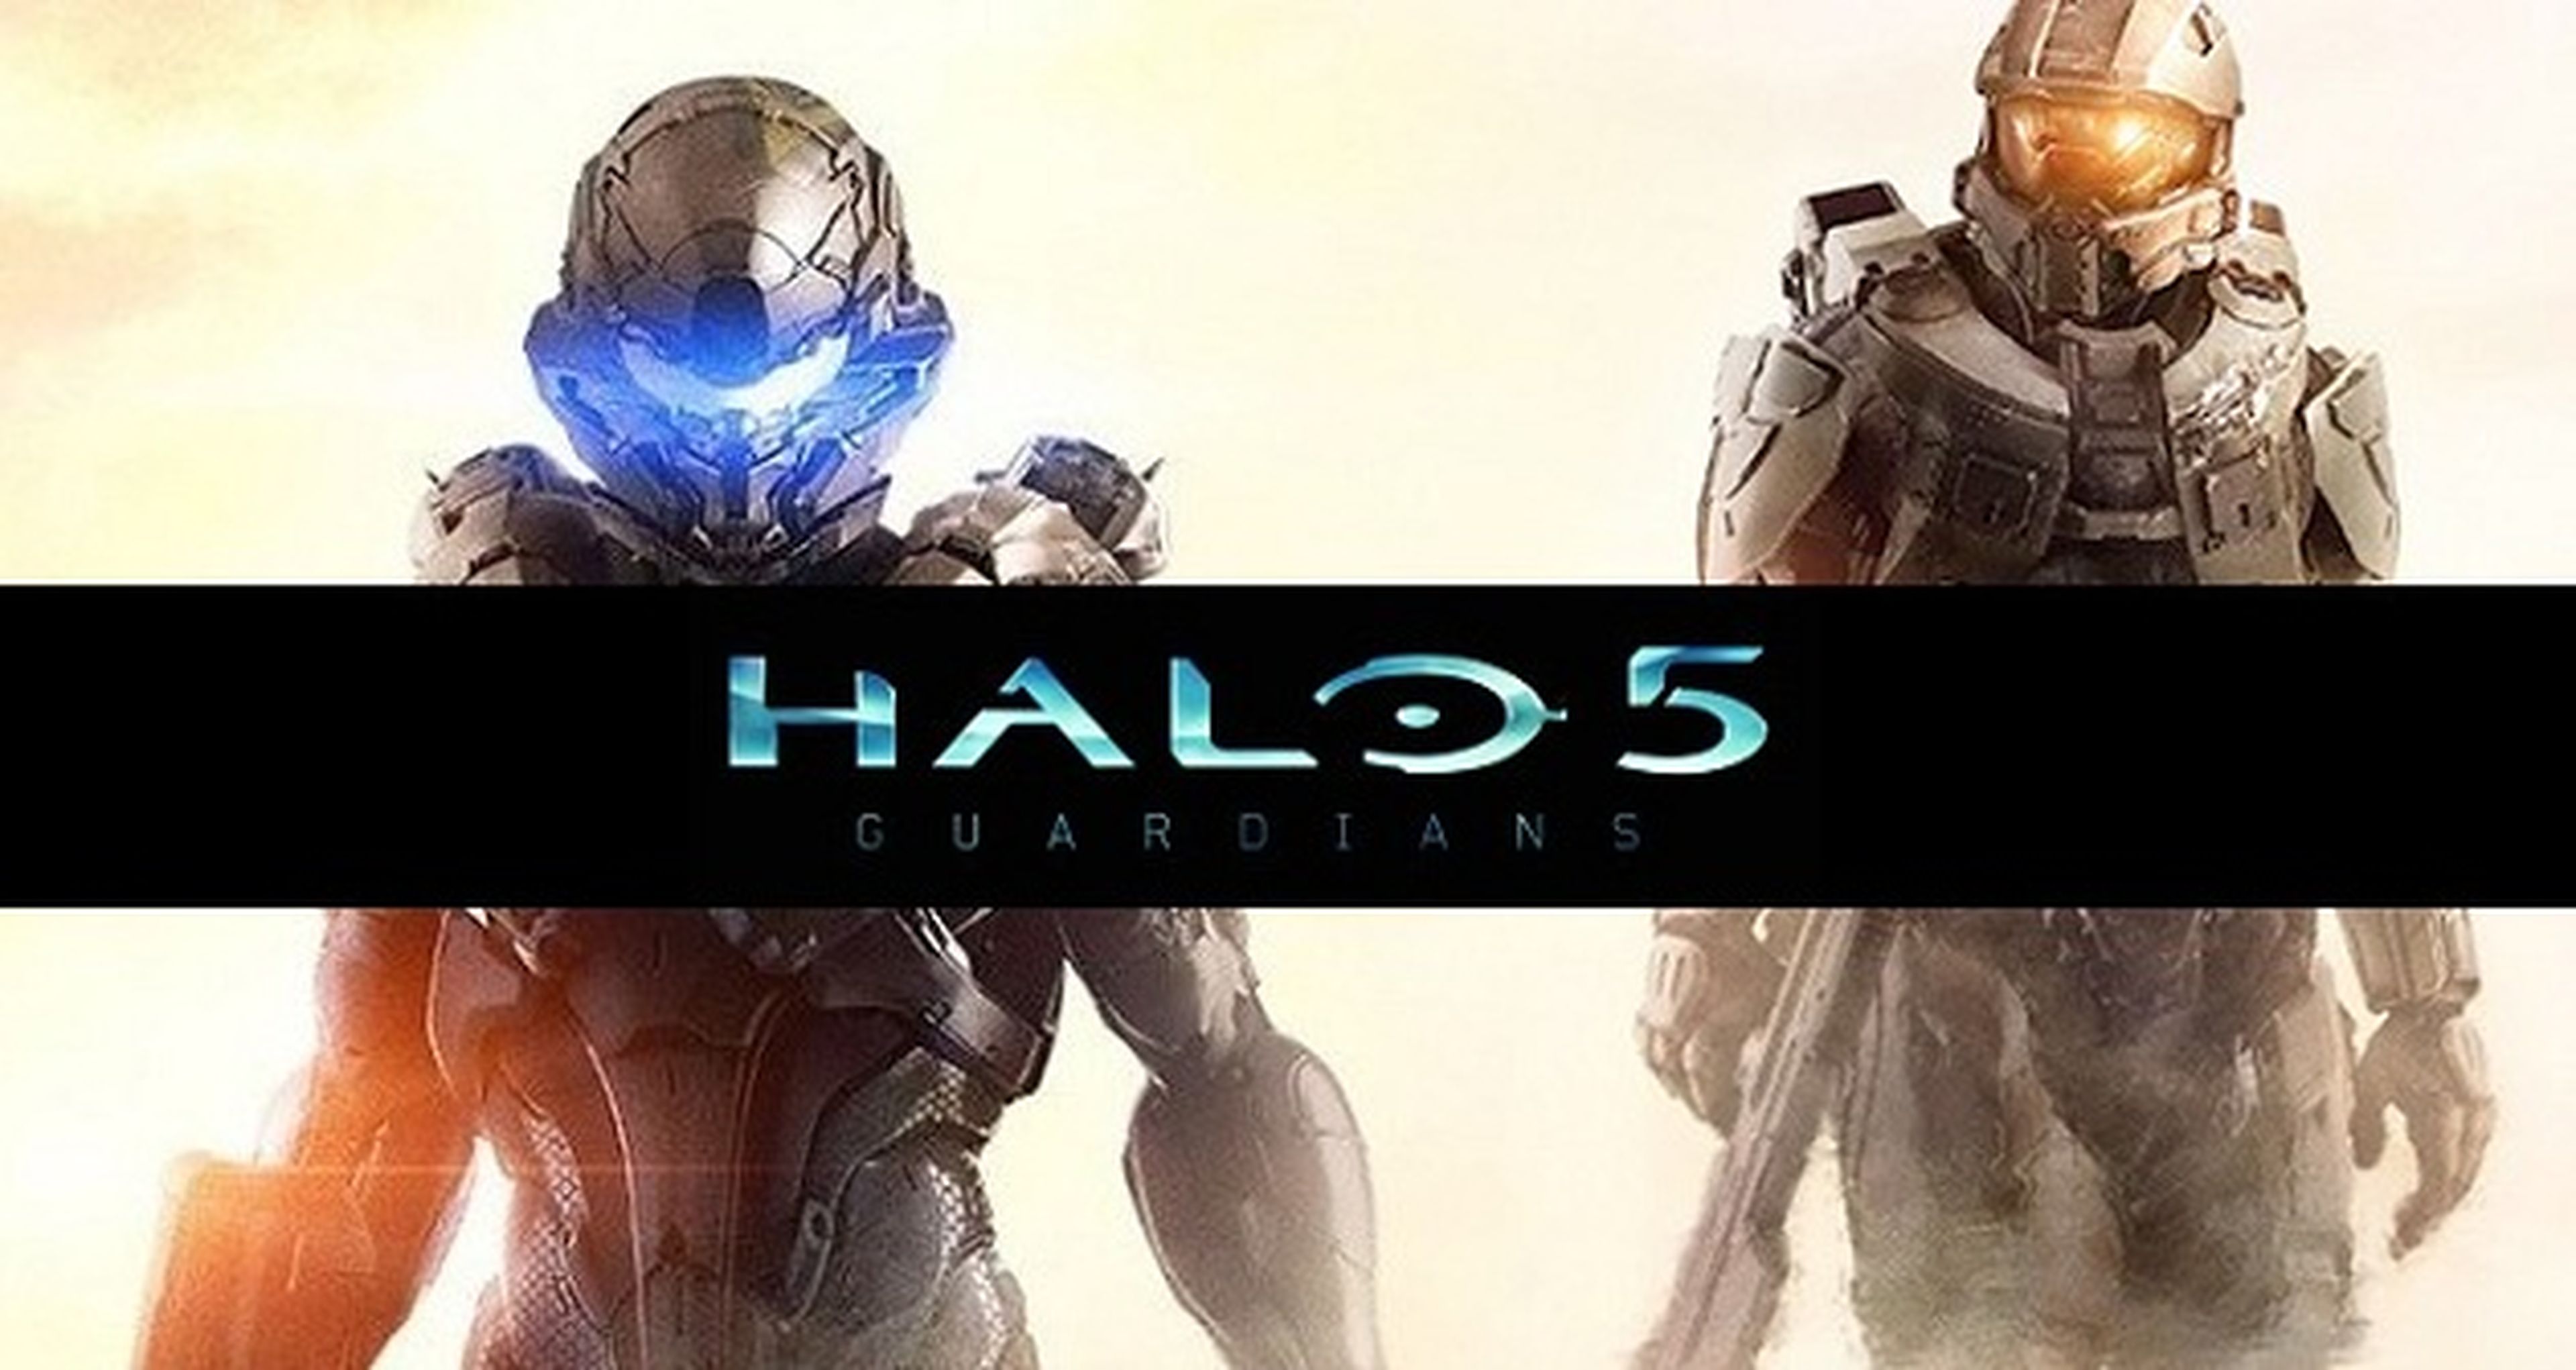 ¿Quién protagoniza la portada de Halo 5 Guardians?